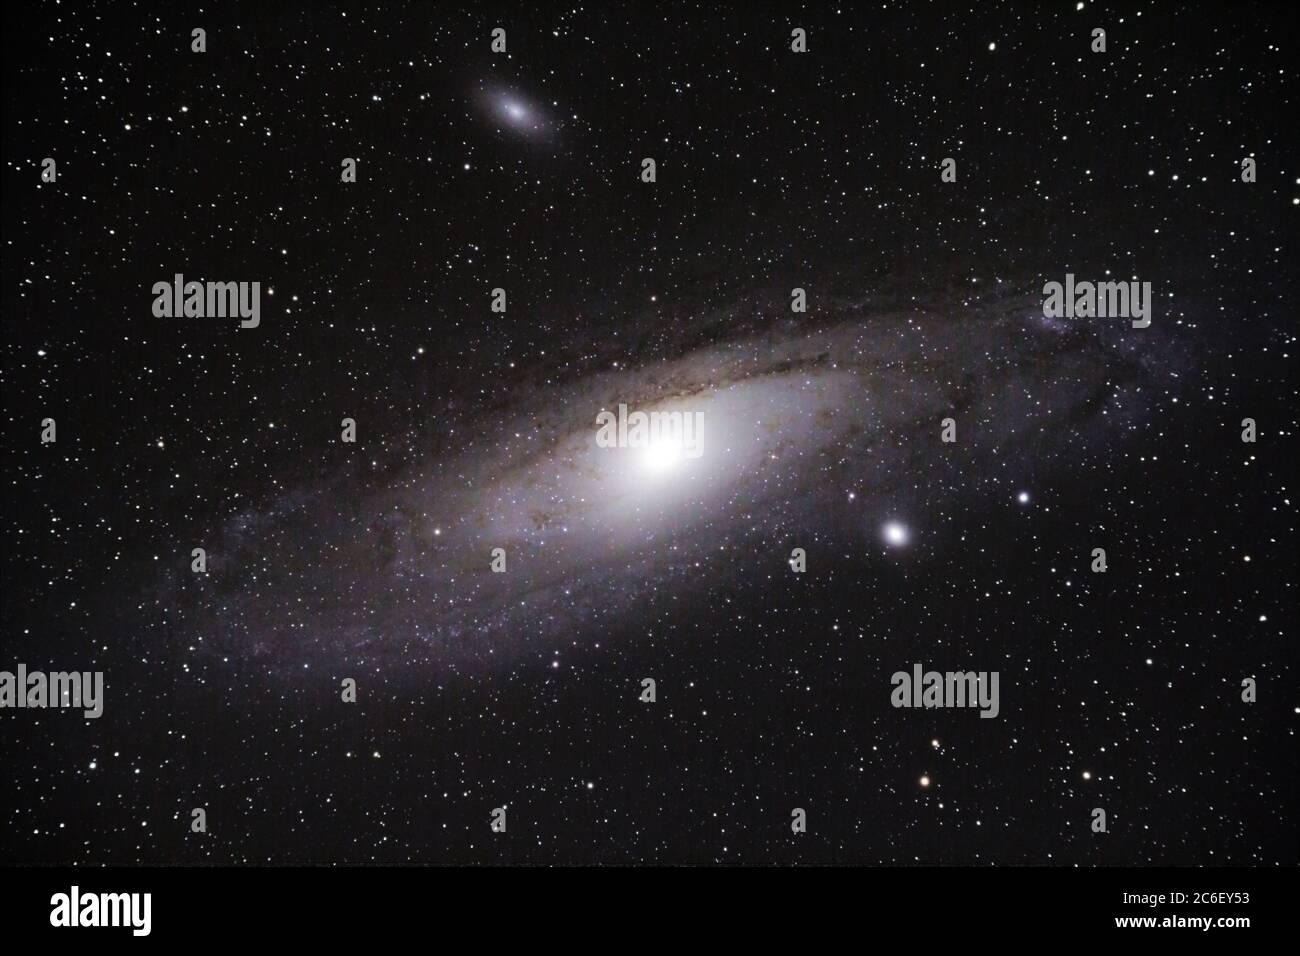 Adromeda Galaxy wie durch ein 80mm Refraktor-Teleskop mit einer DSLR-Kamera und etwa 1 Stunde Belichtungszeit gesehen. Andromeda Galaxy ist eine Spiralgalaxie Stockfoto